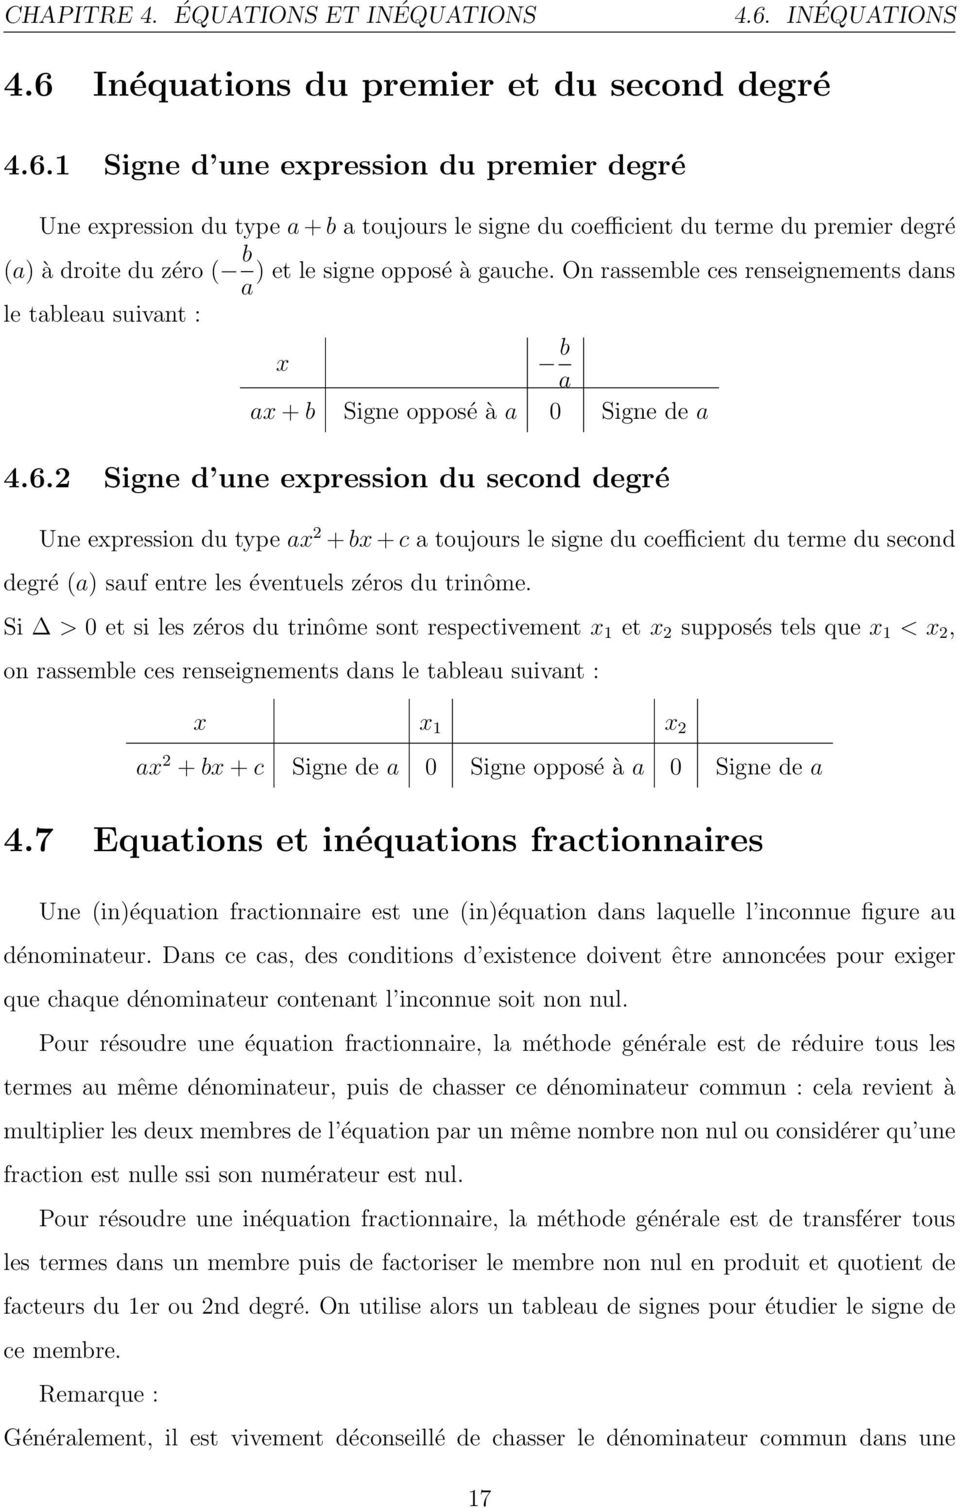 Inéquations du premier et du second degré 4.6.